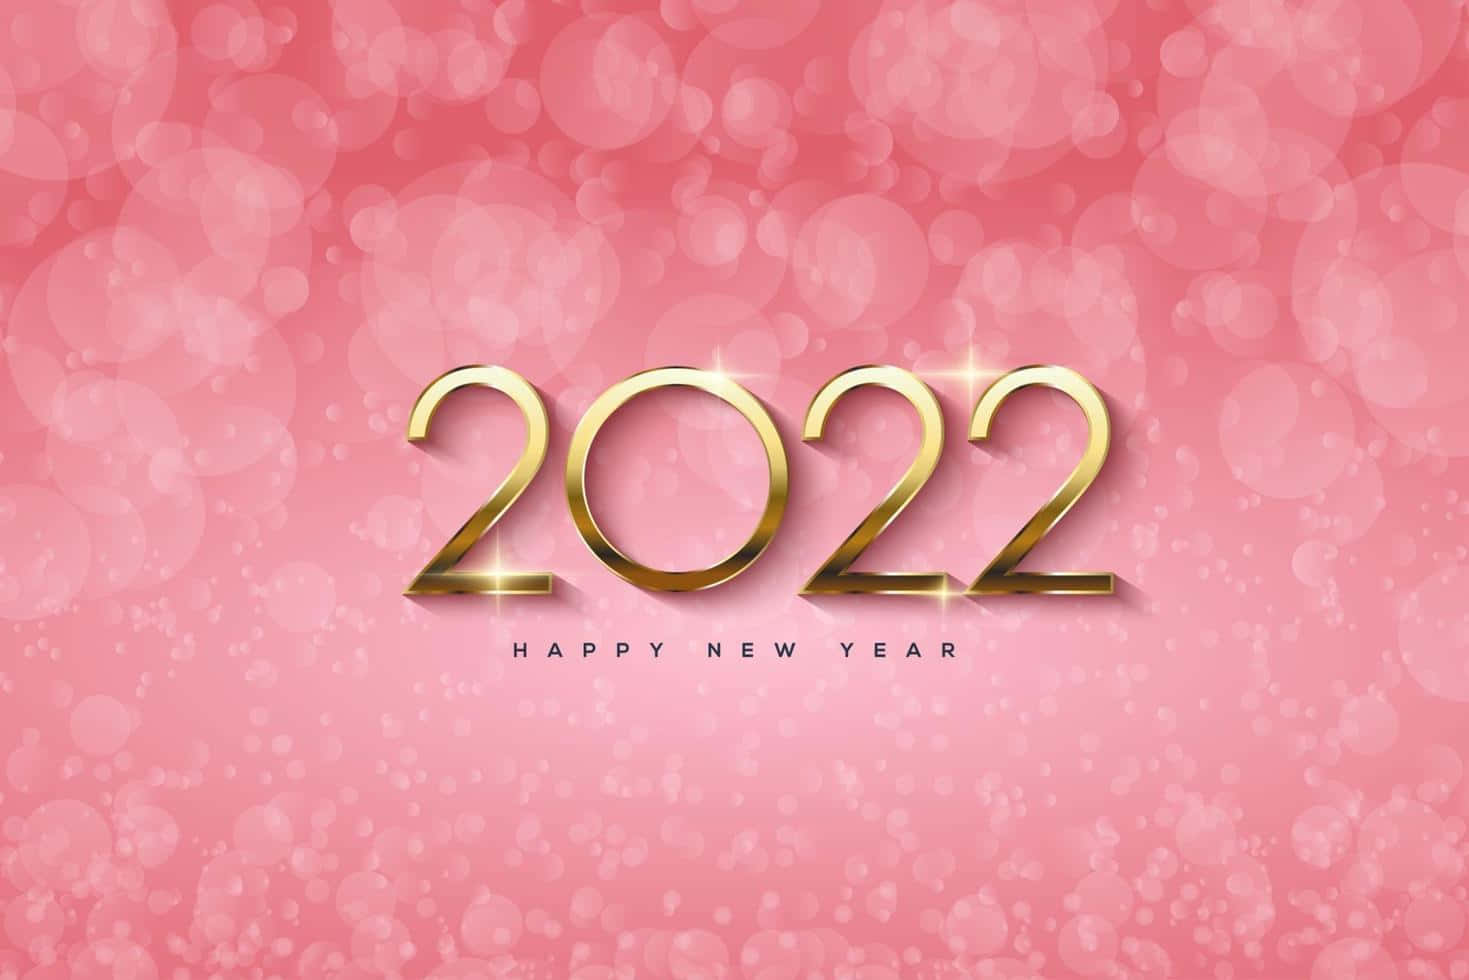 Neuesjahr, Neue Möglichkeiten - 2022